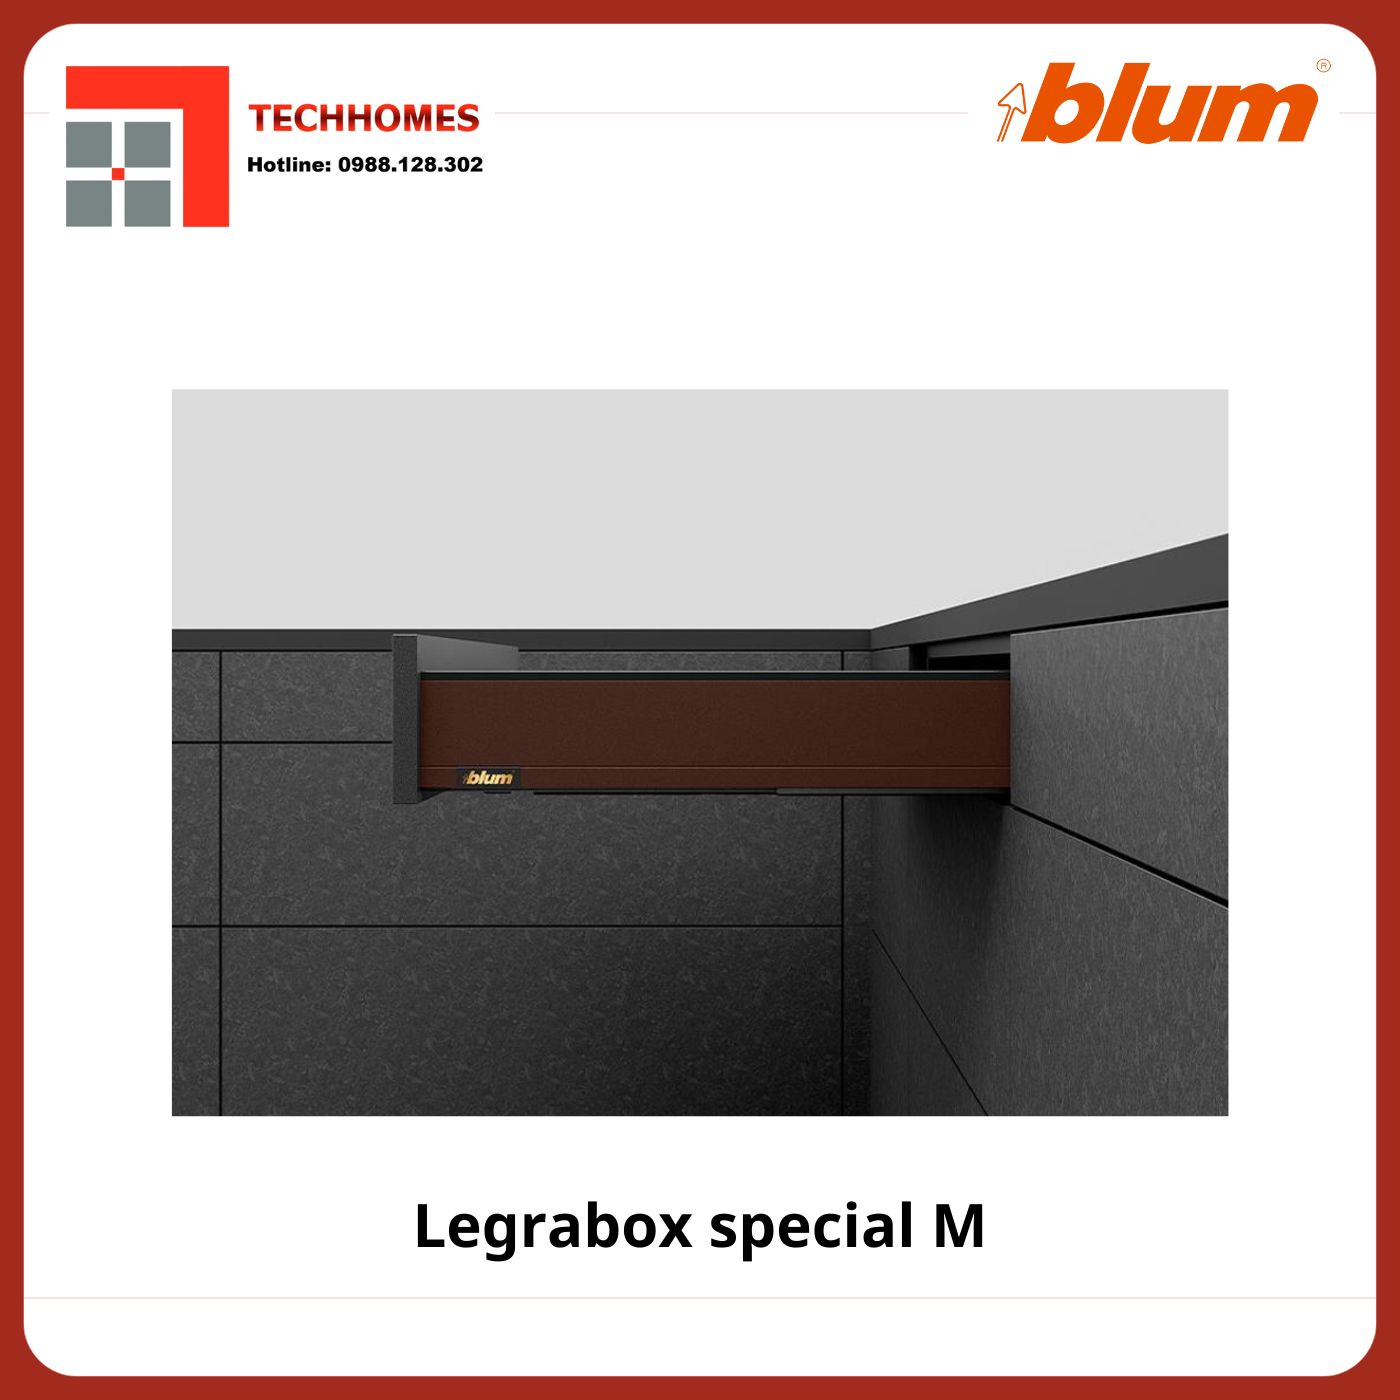 RAY HỘP ĐẶC BIỆT BLUM LEGRABOX SPECIAL M - Legrabox special M